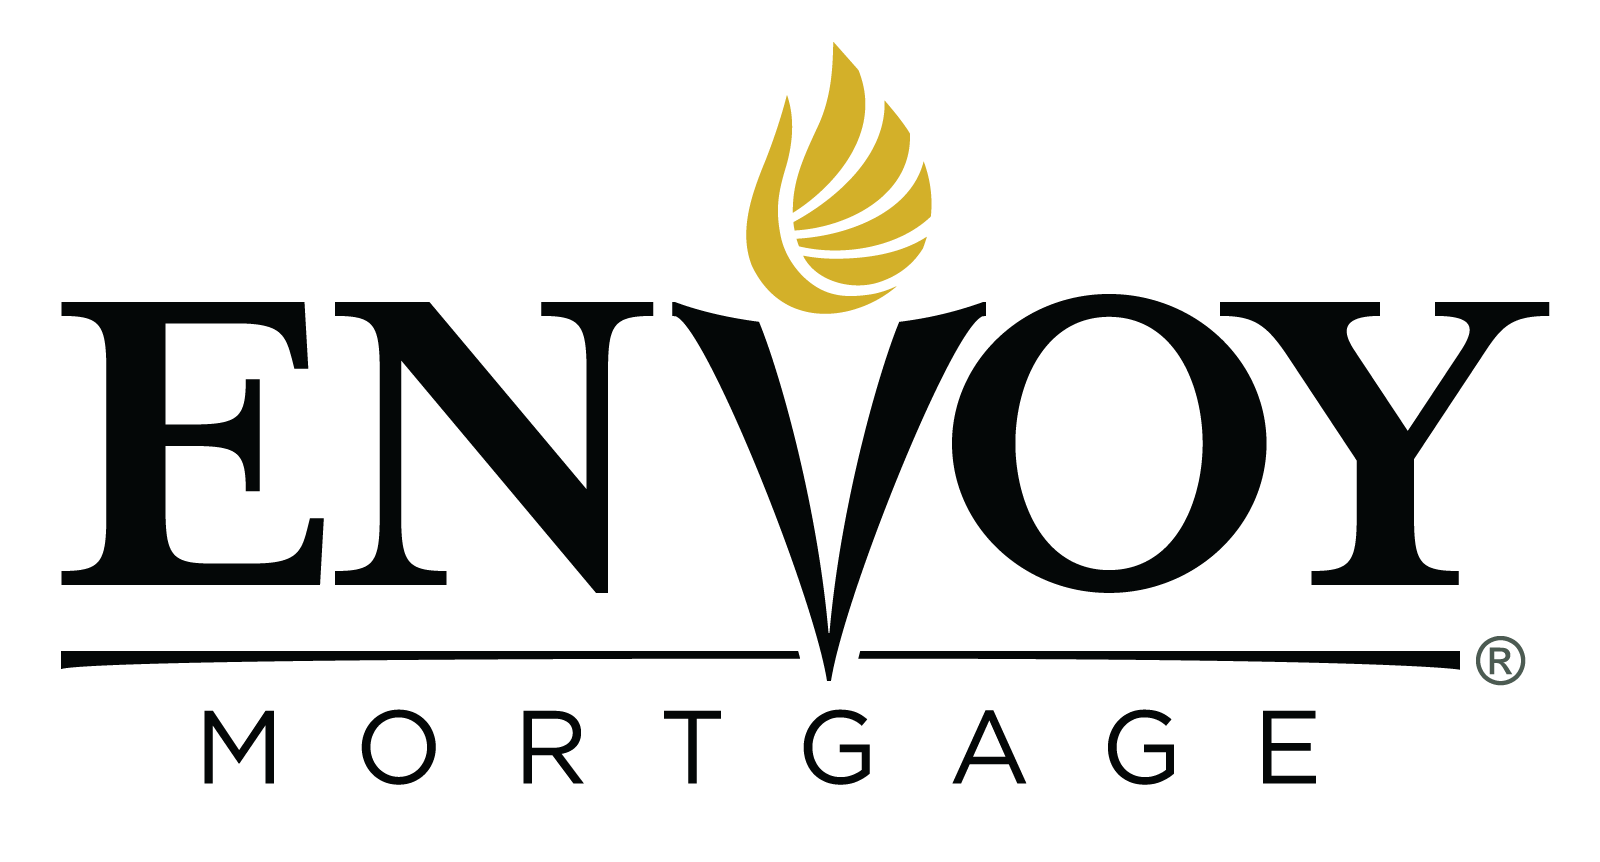 Mortgage Logo - Home Loans & Mortgage Lending - Envoy Mortgage